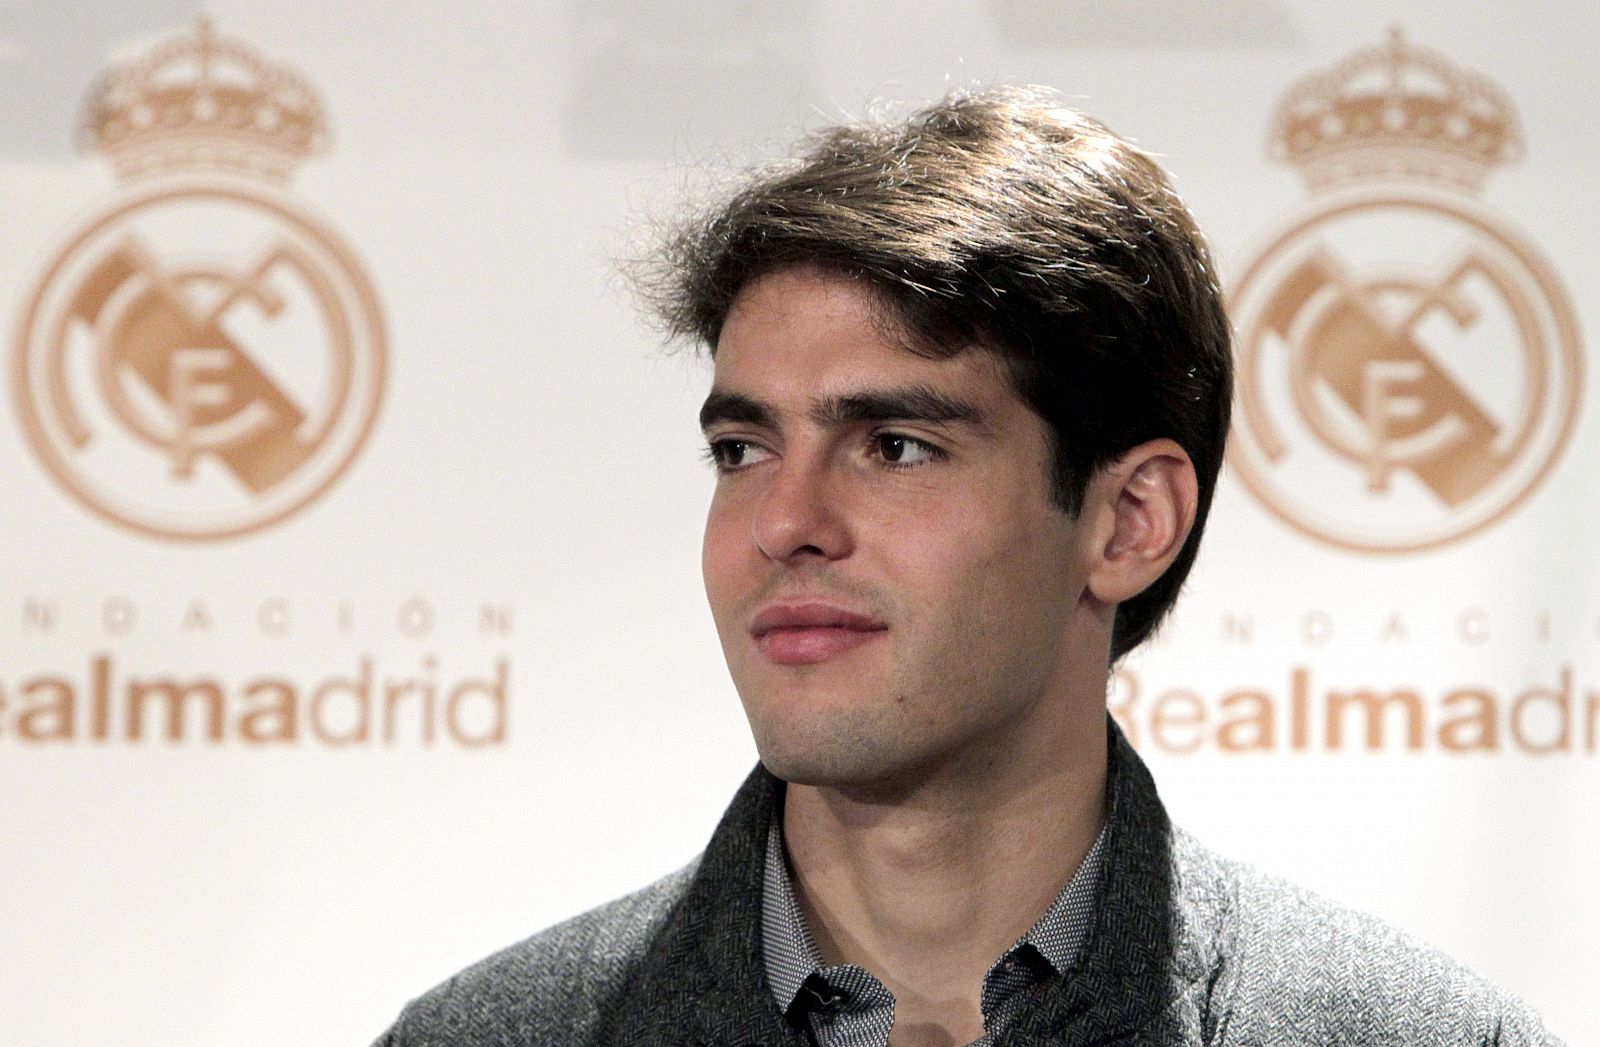 El jugador brasileño del Real Madrid Ricardo Izecson dos Santos "Kaká".